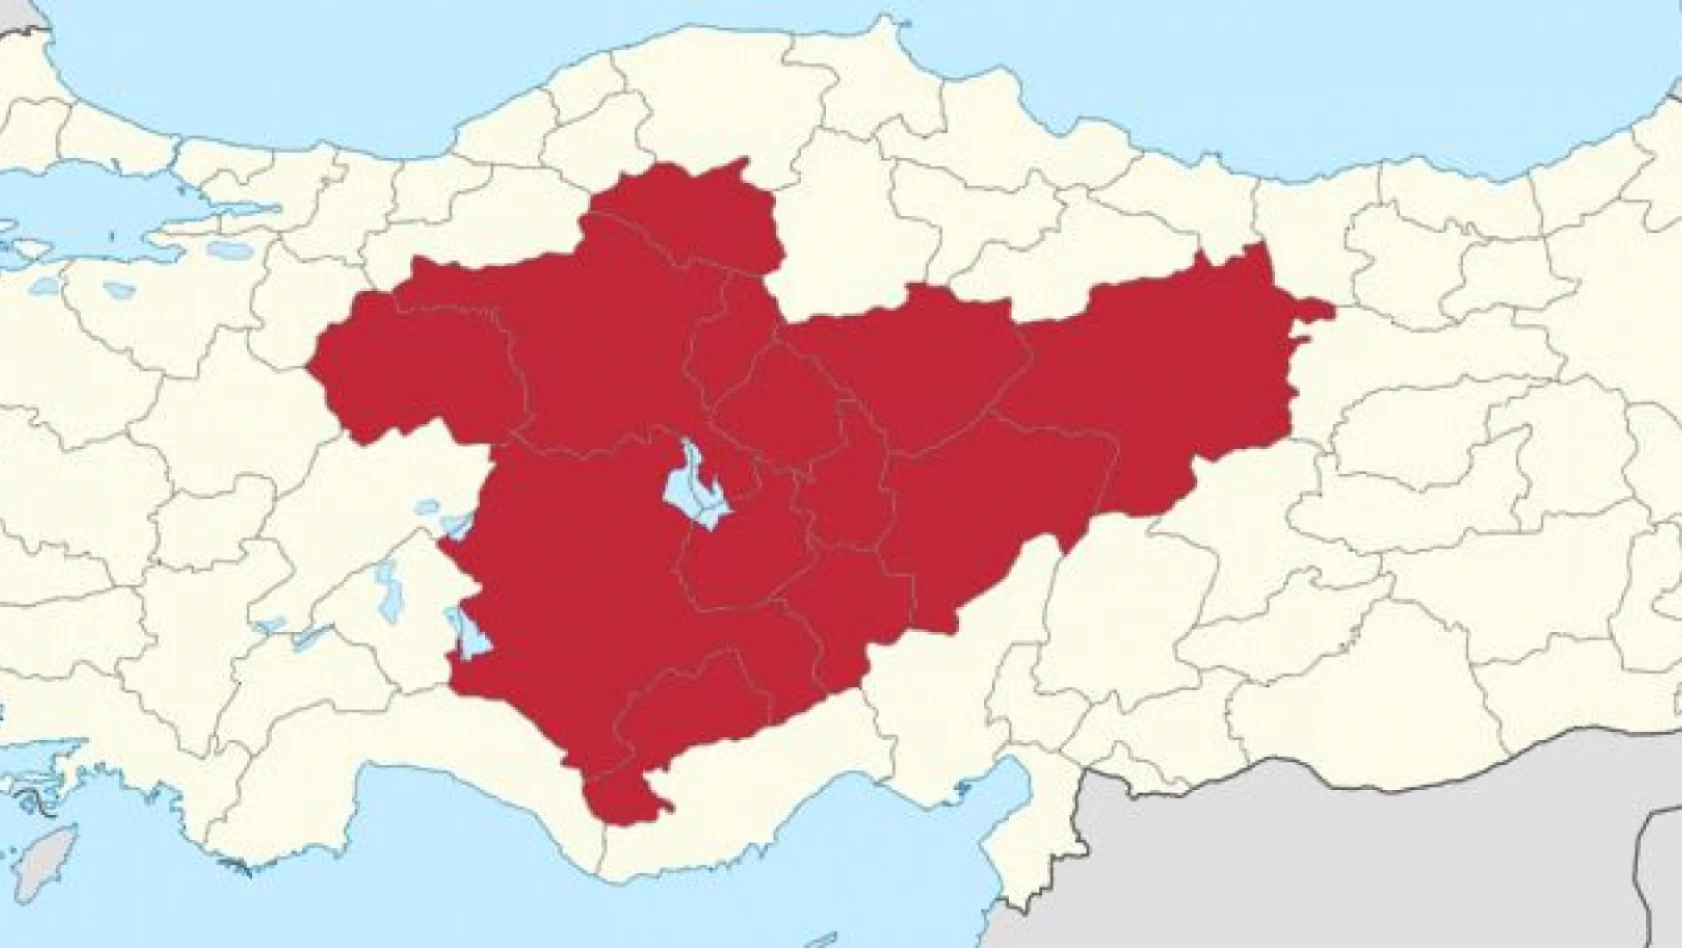 Kayseri, Yozgat, Sivas, Kırşehir, Ankara, Çankırı, Nevşehir, Eskişehir dikkat – Uzmanlar uyardı!